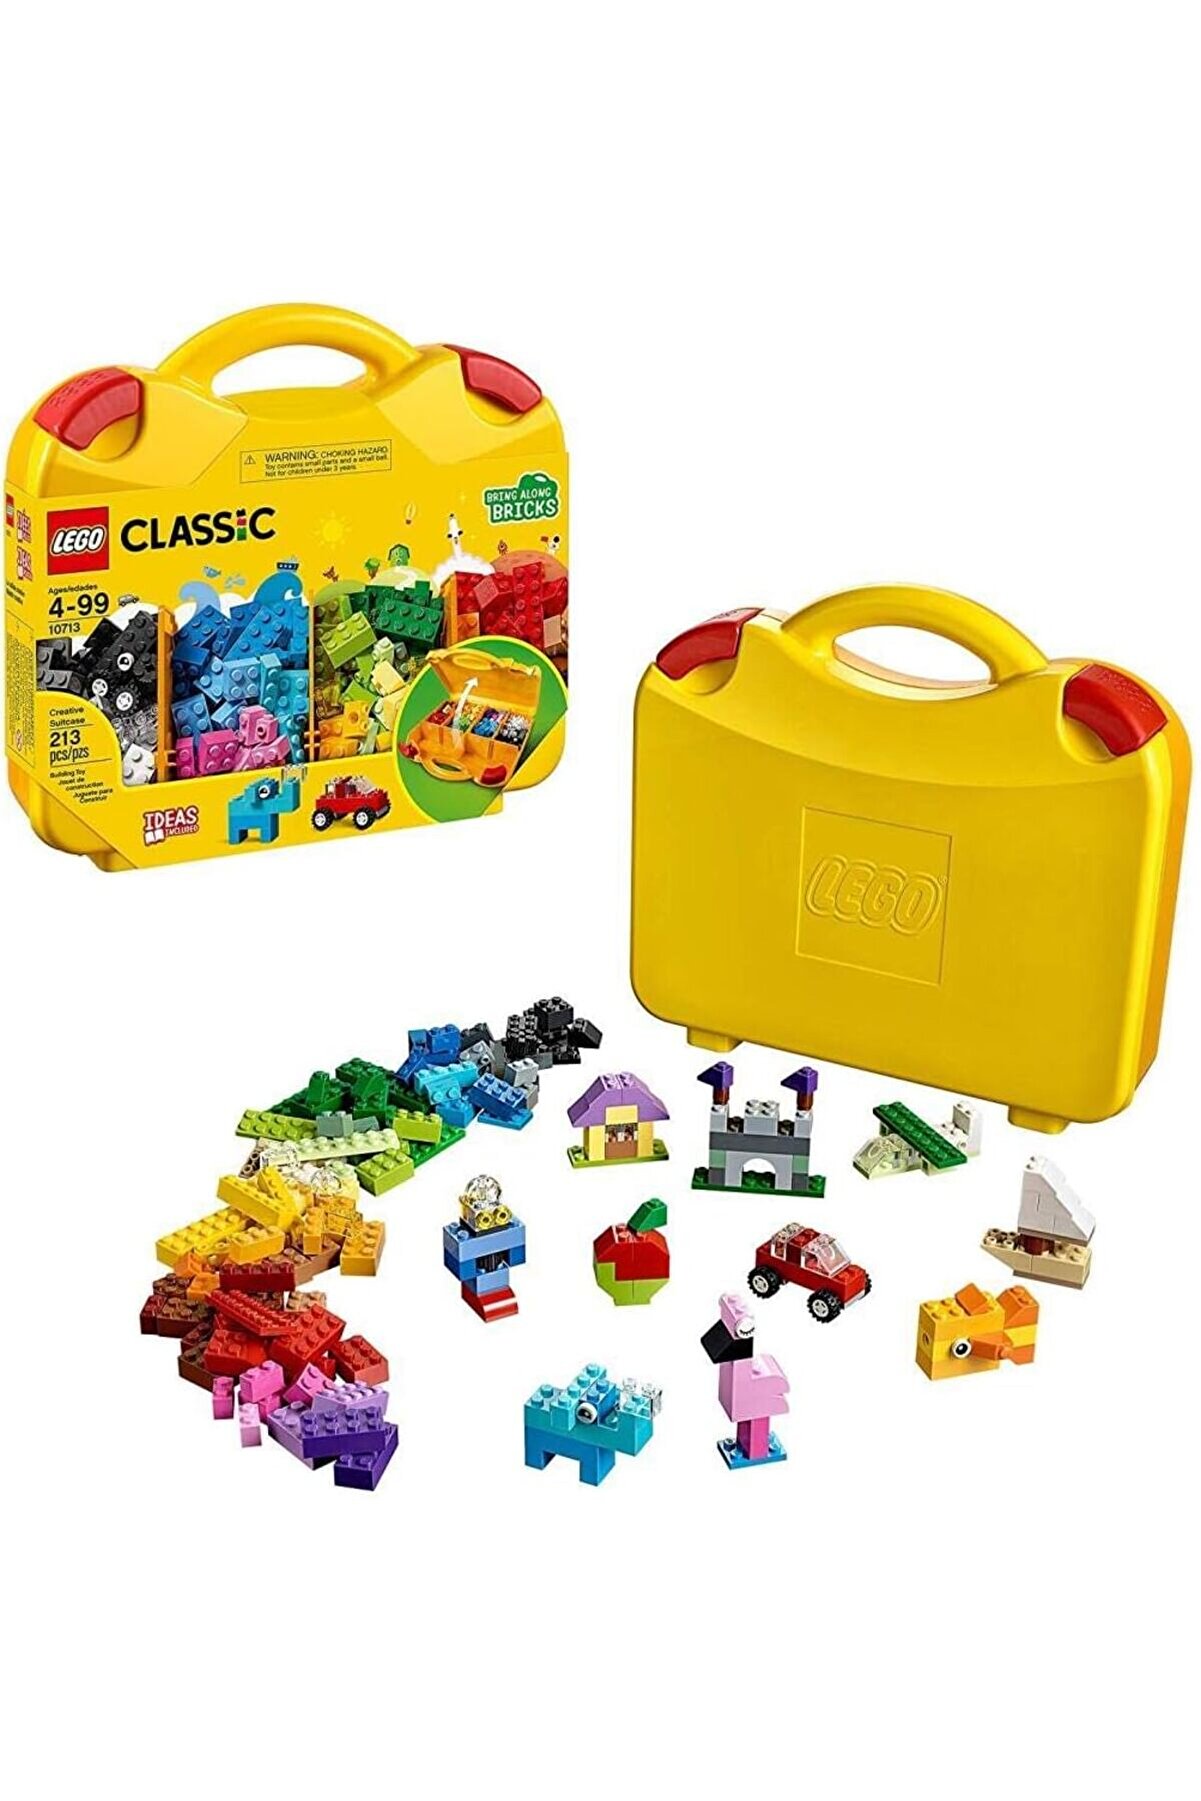 LEGO Classic Yaratıcı Çanta 10713 - 4 Yaş ve Üzeri Çocuklar için Oyuncak Yapım Seti (213 Parça)